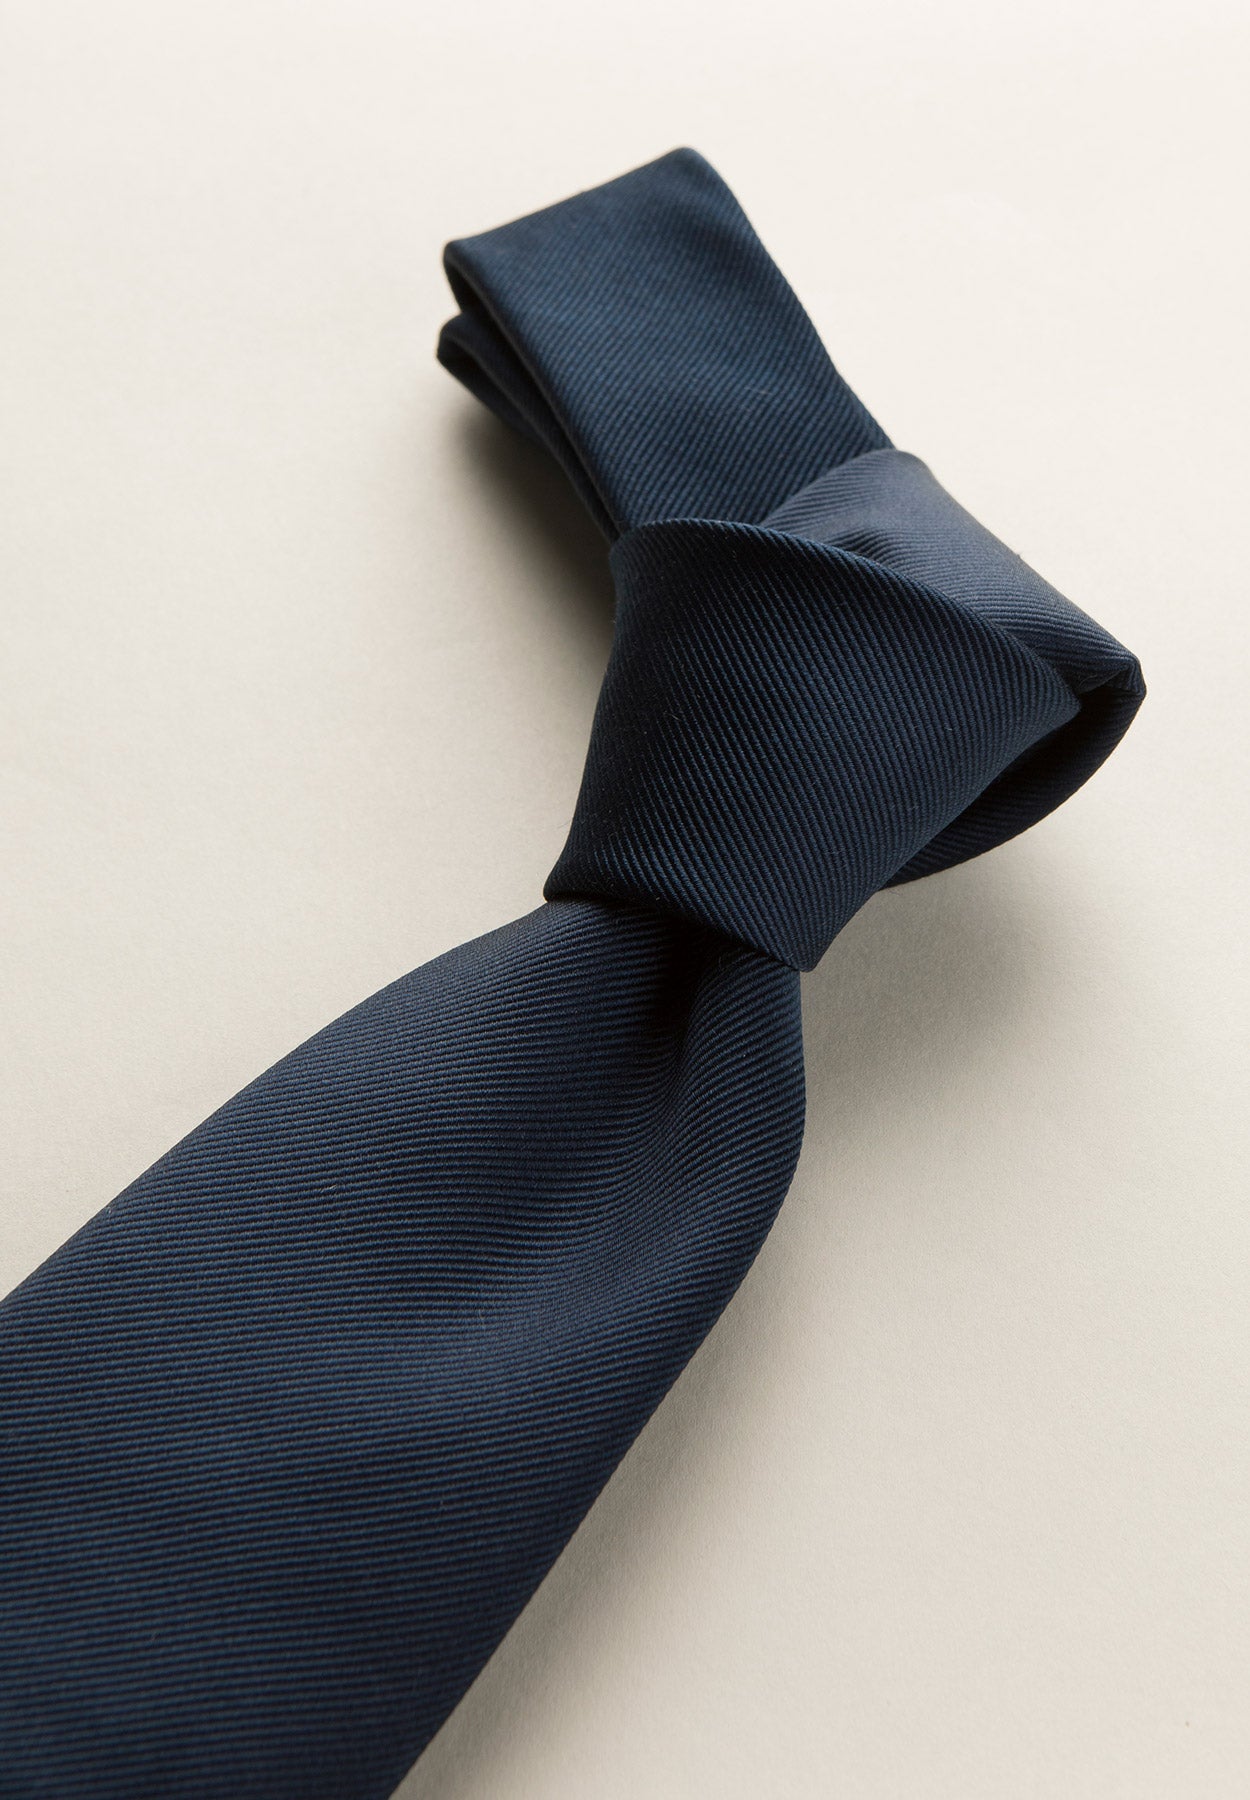 Midnight blue plain weave silk tie